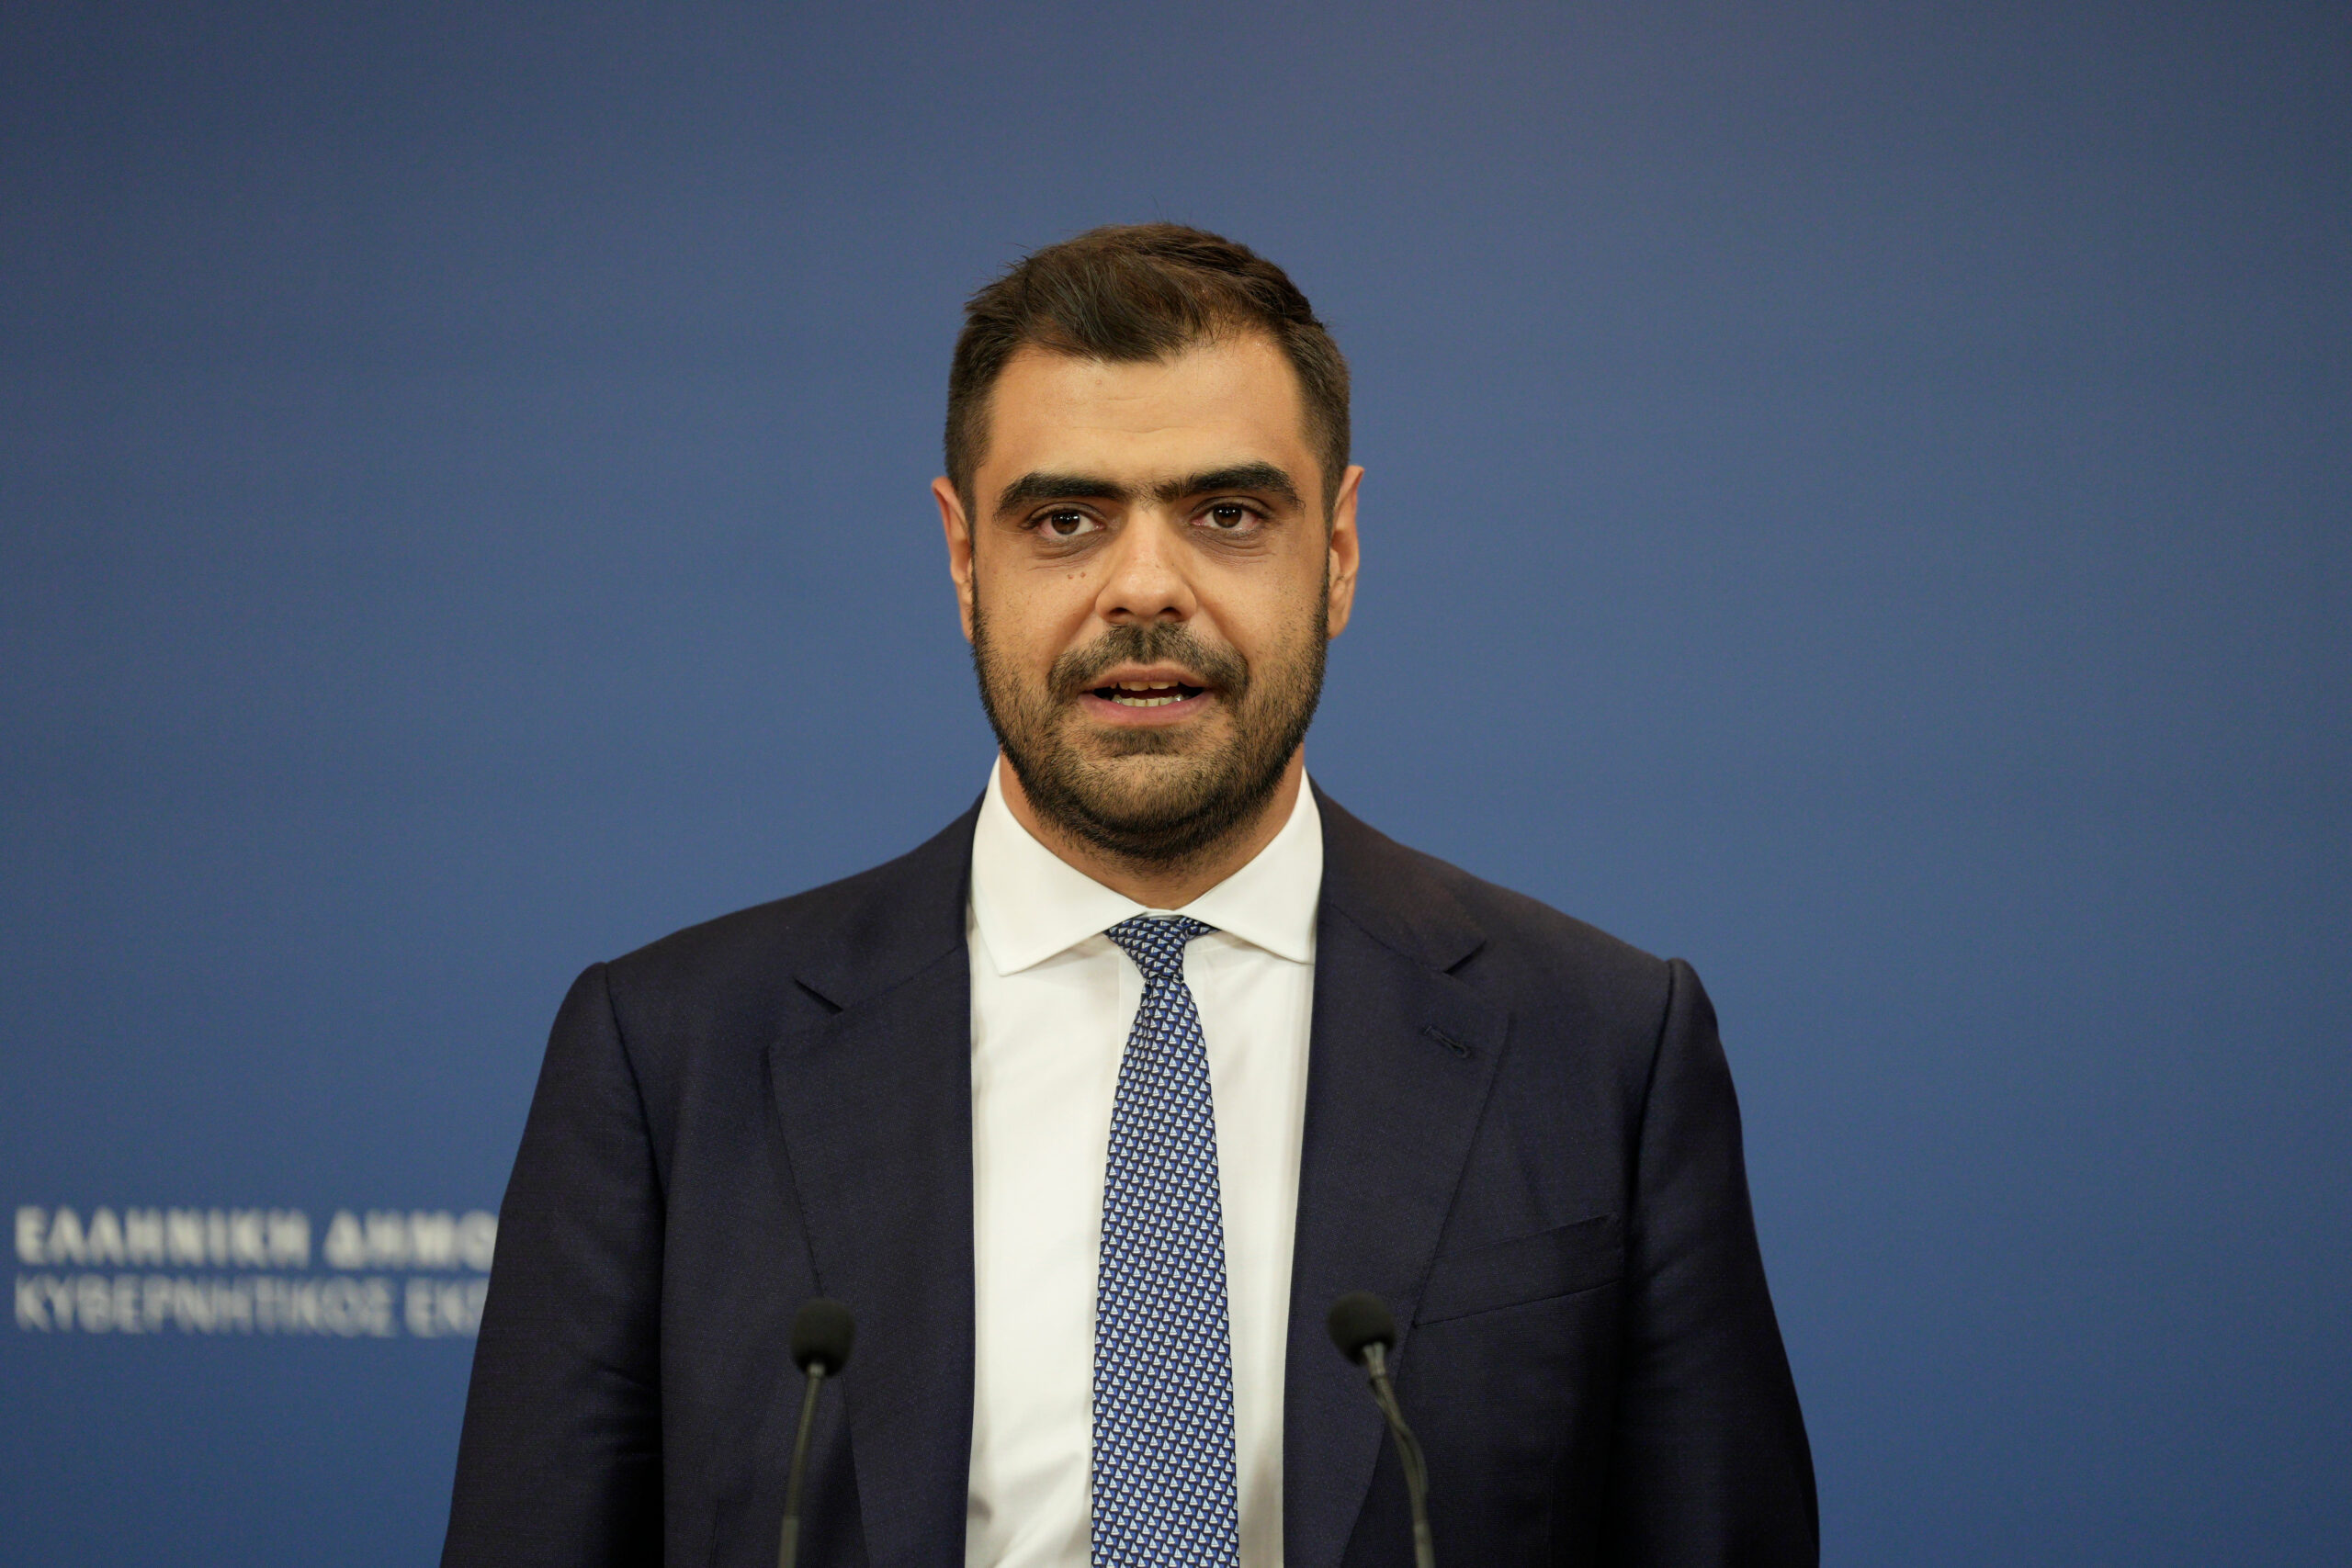 Παύλος Μαρινάκης: Έγινε αντικατάσταση των μελών της ΑΔΑΕ, γιατί έληξε η θητεία τους